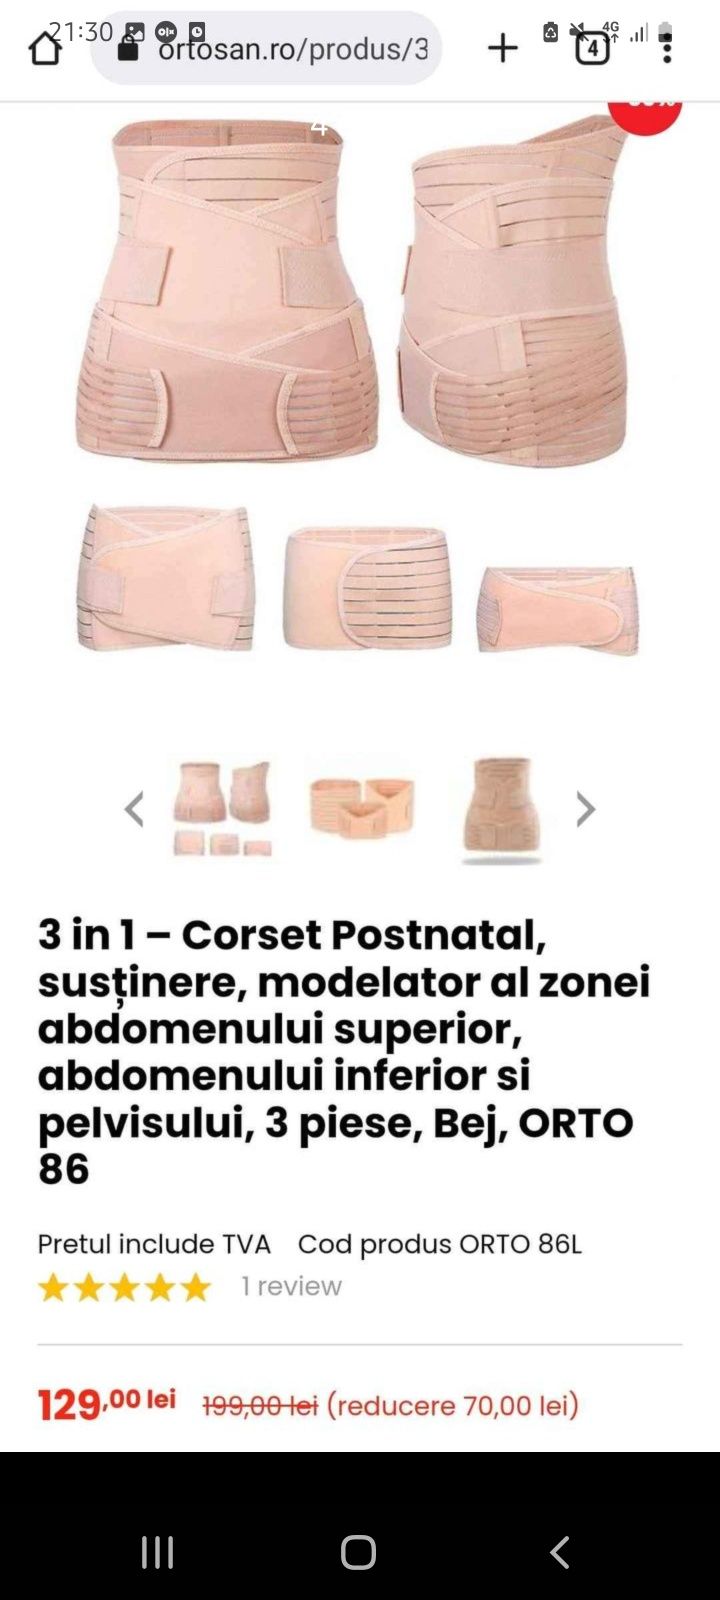 Centura/corset postnatal